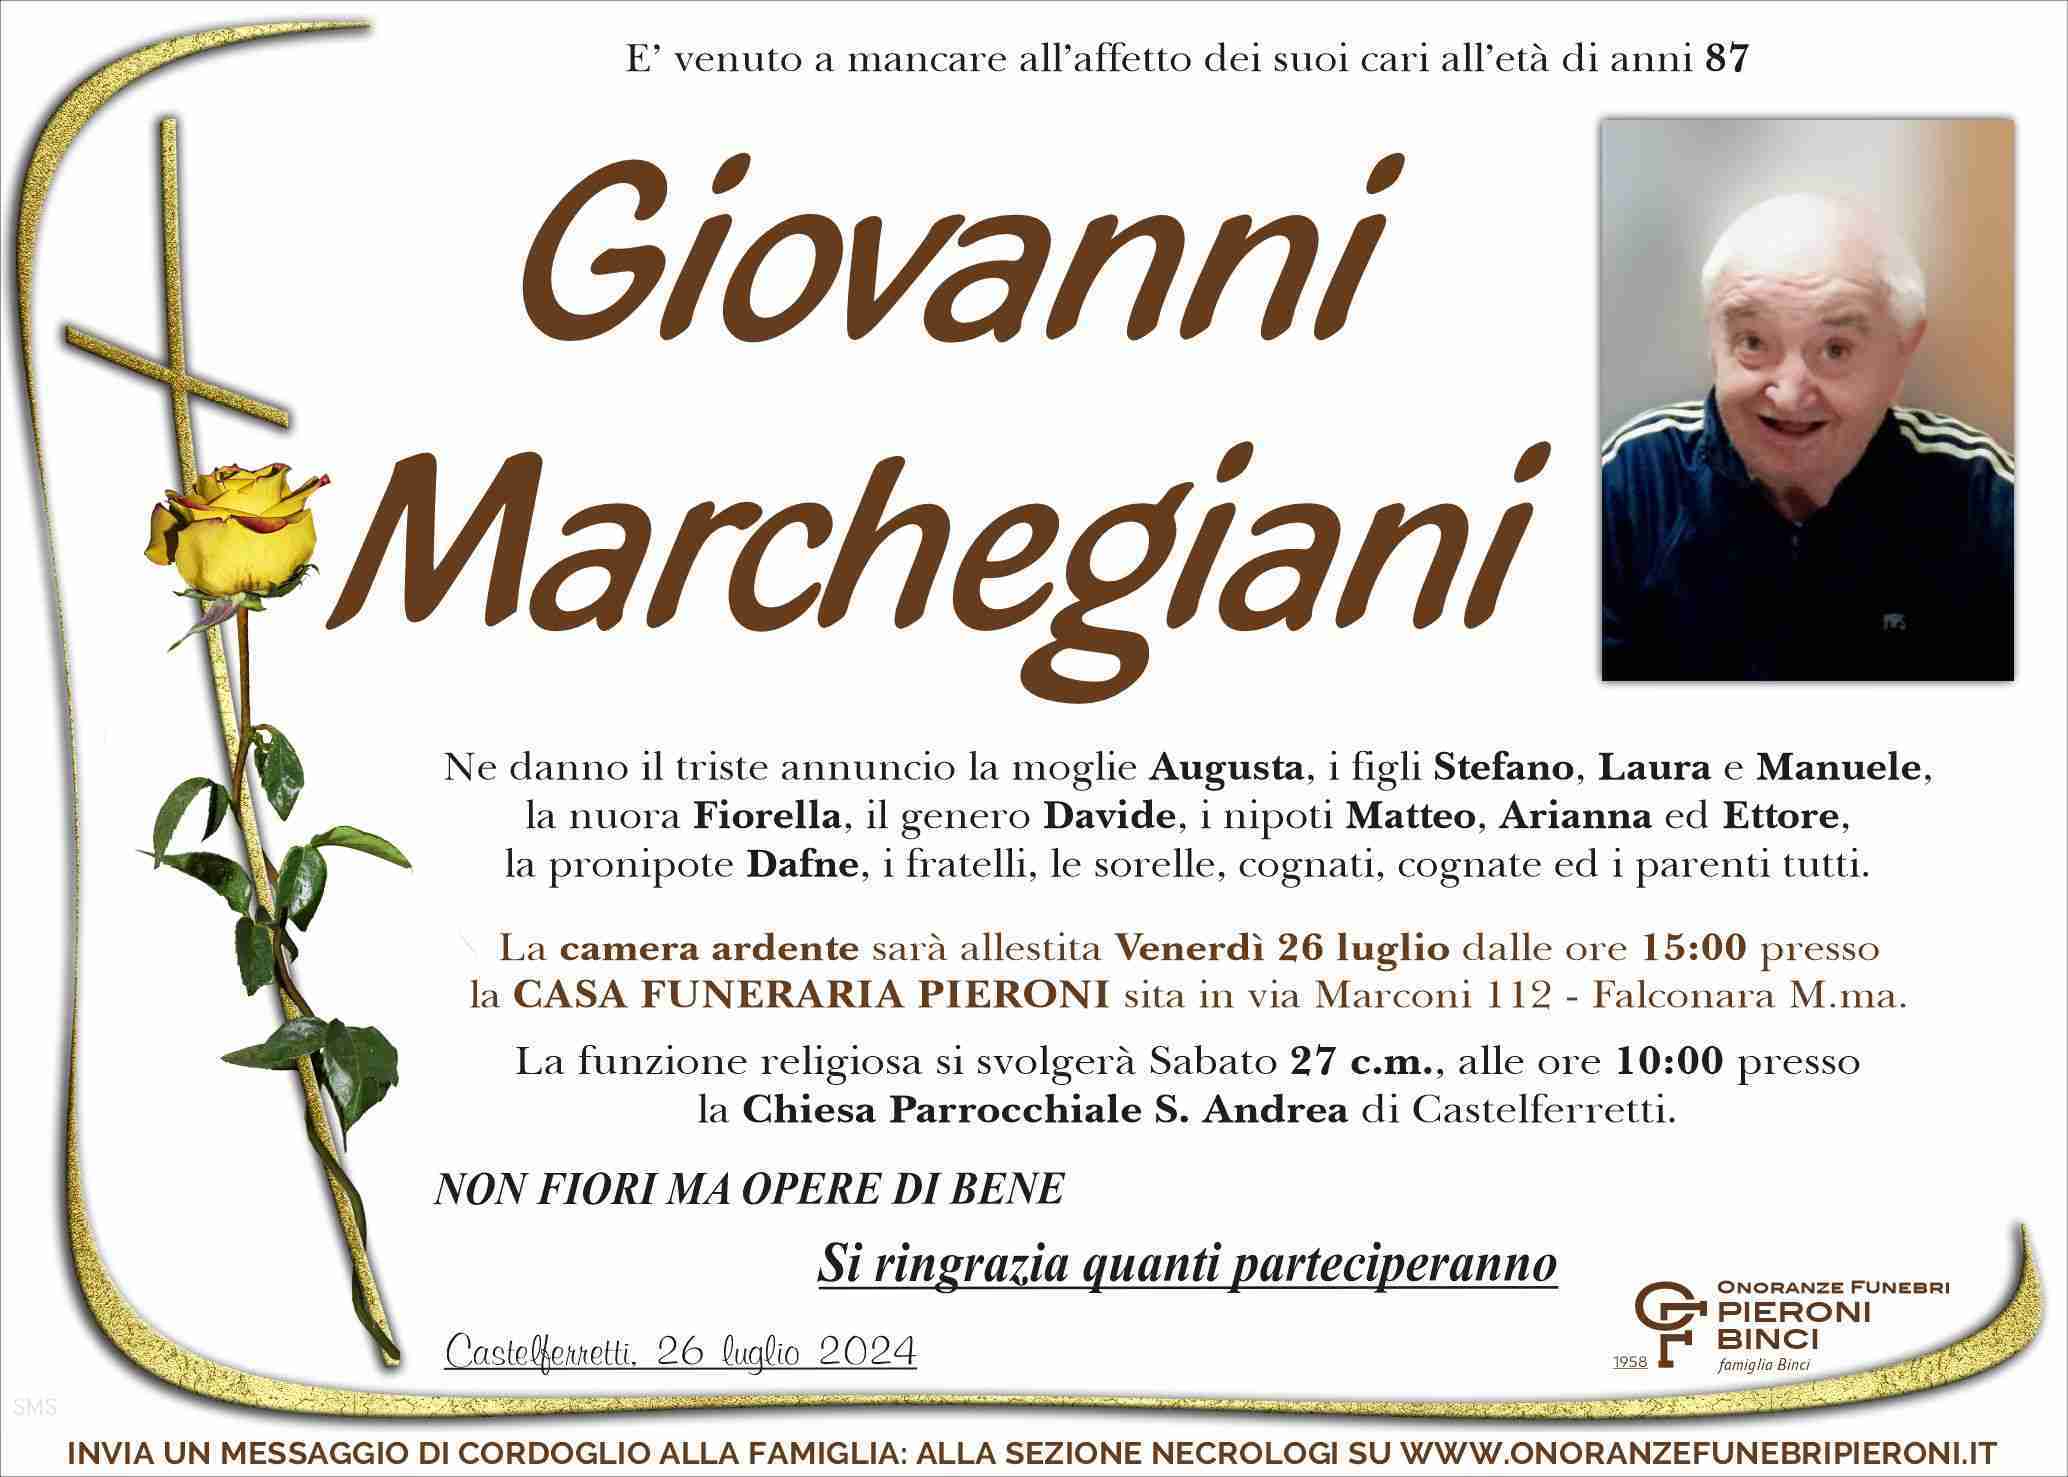 Giovanni Marchegiani